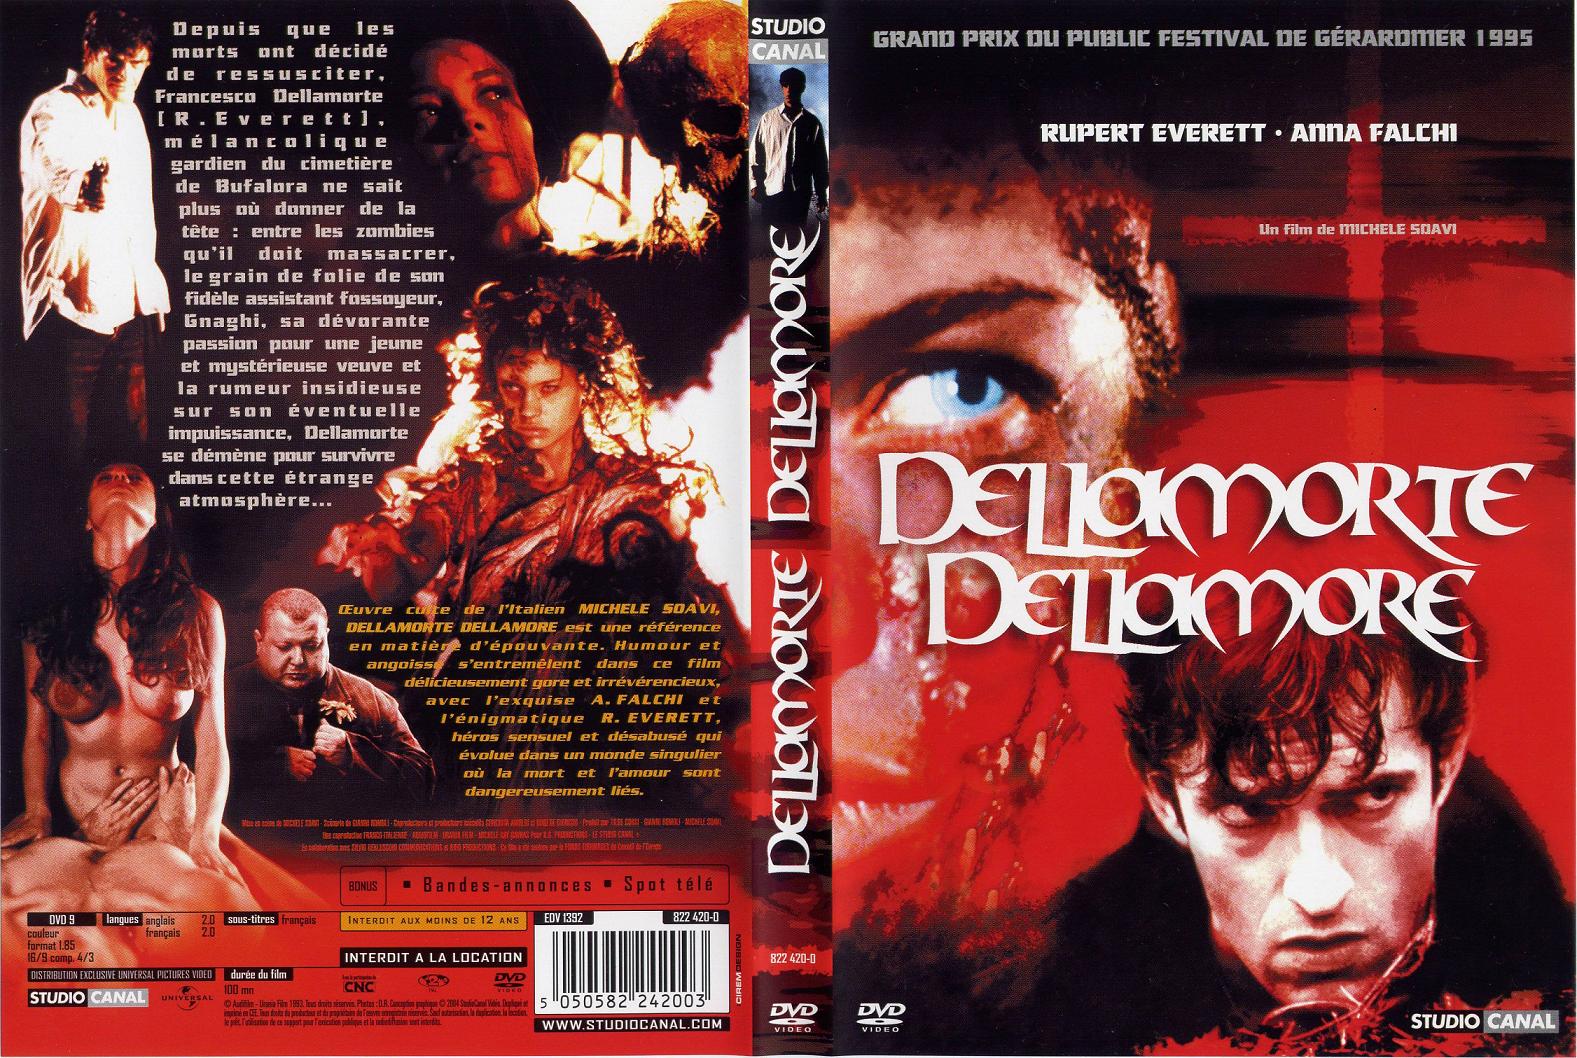 Jaquette DVD Dellamorte dellamore